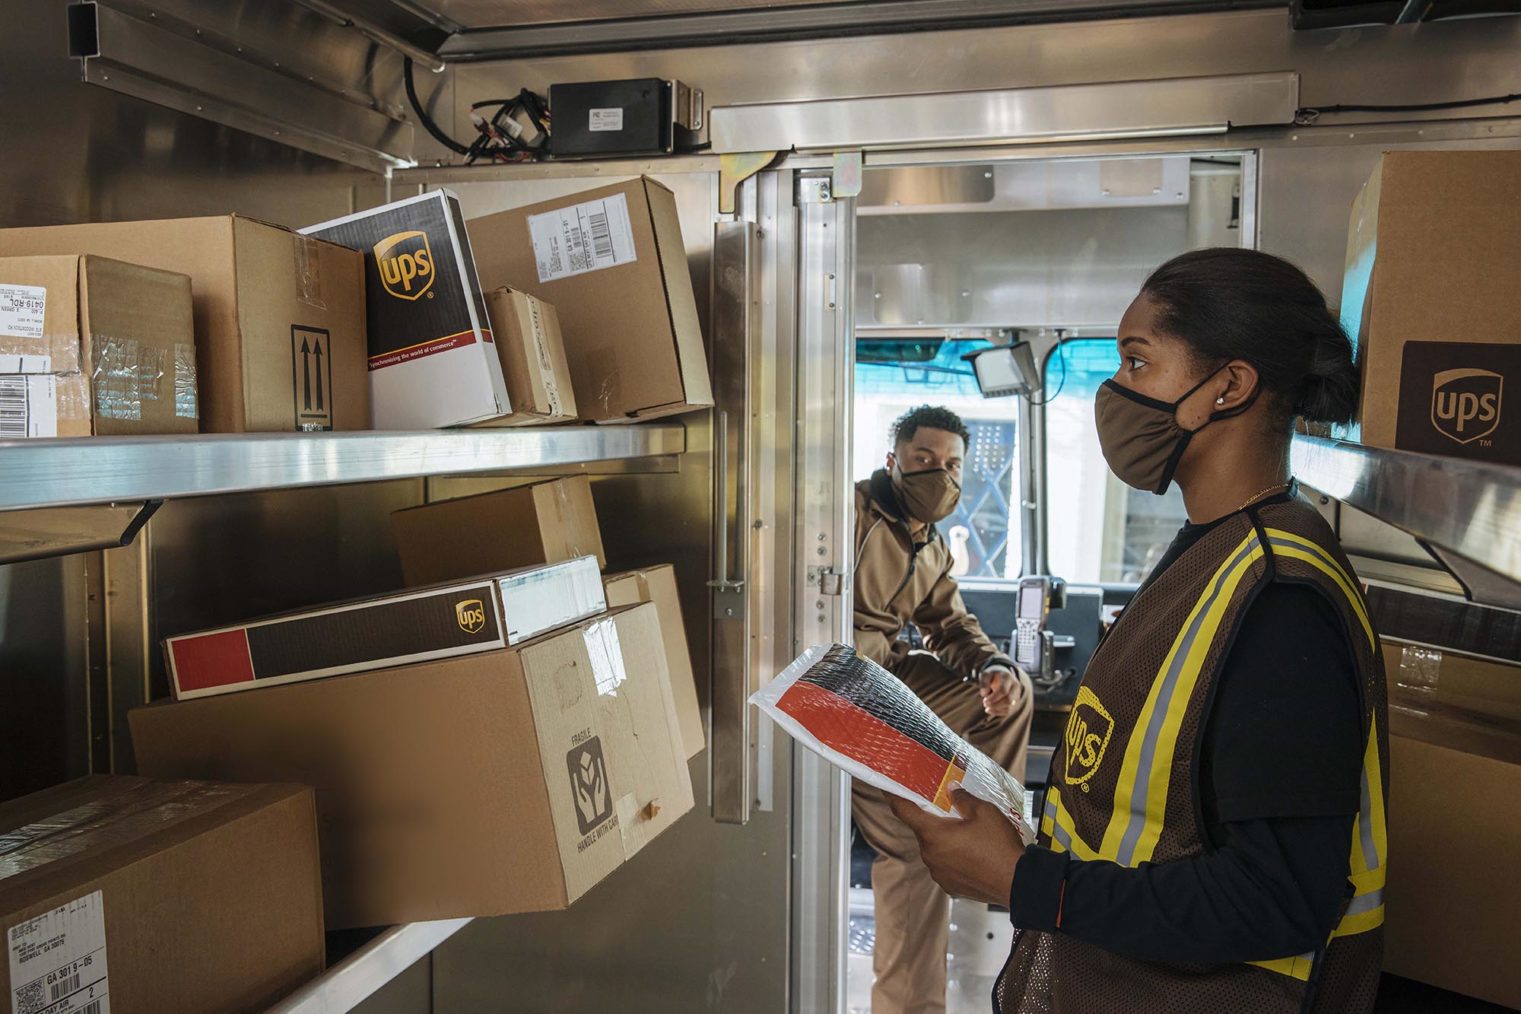 Bilde av to UPS-ansatte som sorterer pakker i en varebil.